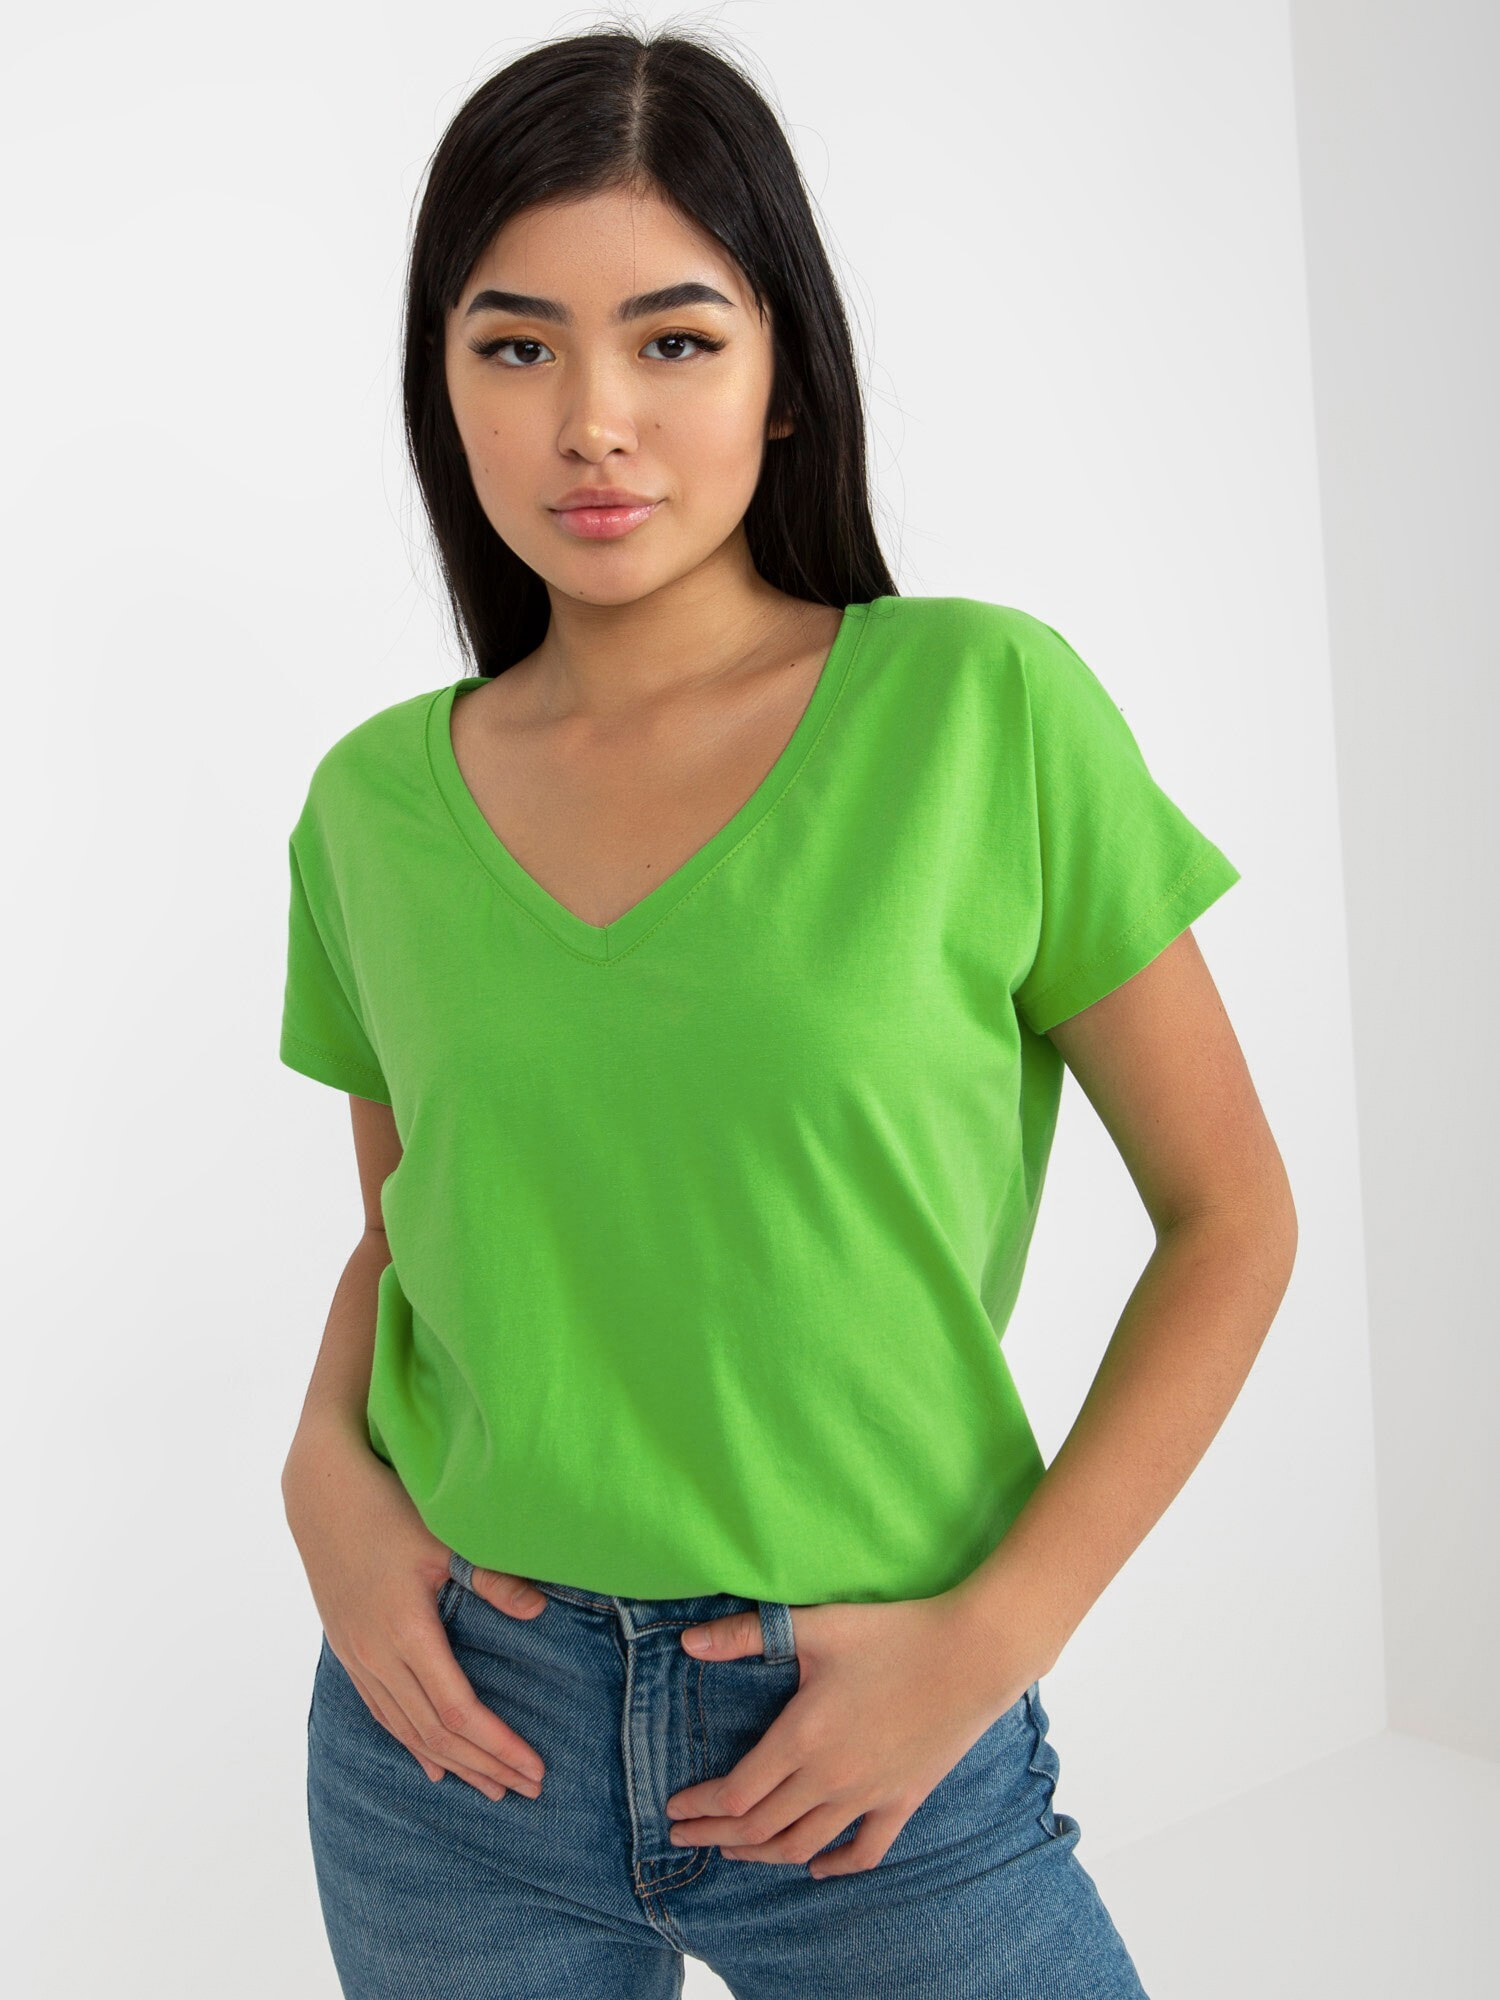 T-shirt-RV-TS-4832.62P-jasny zielony